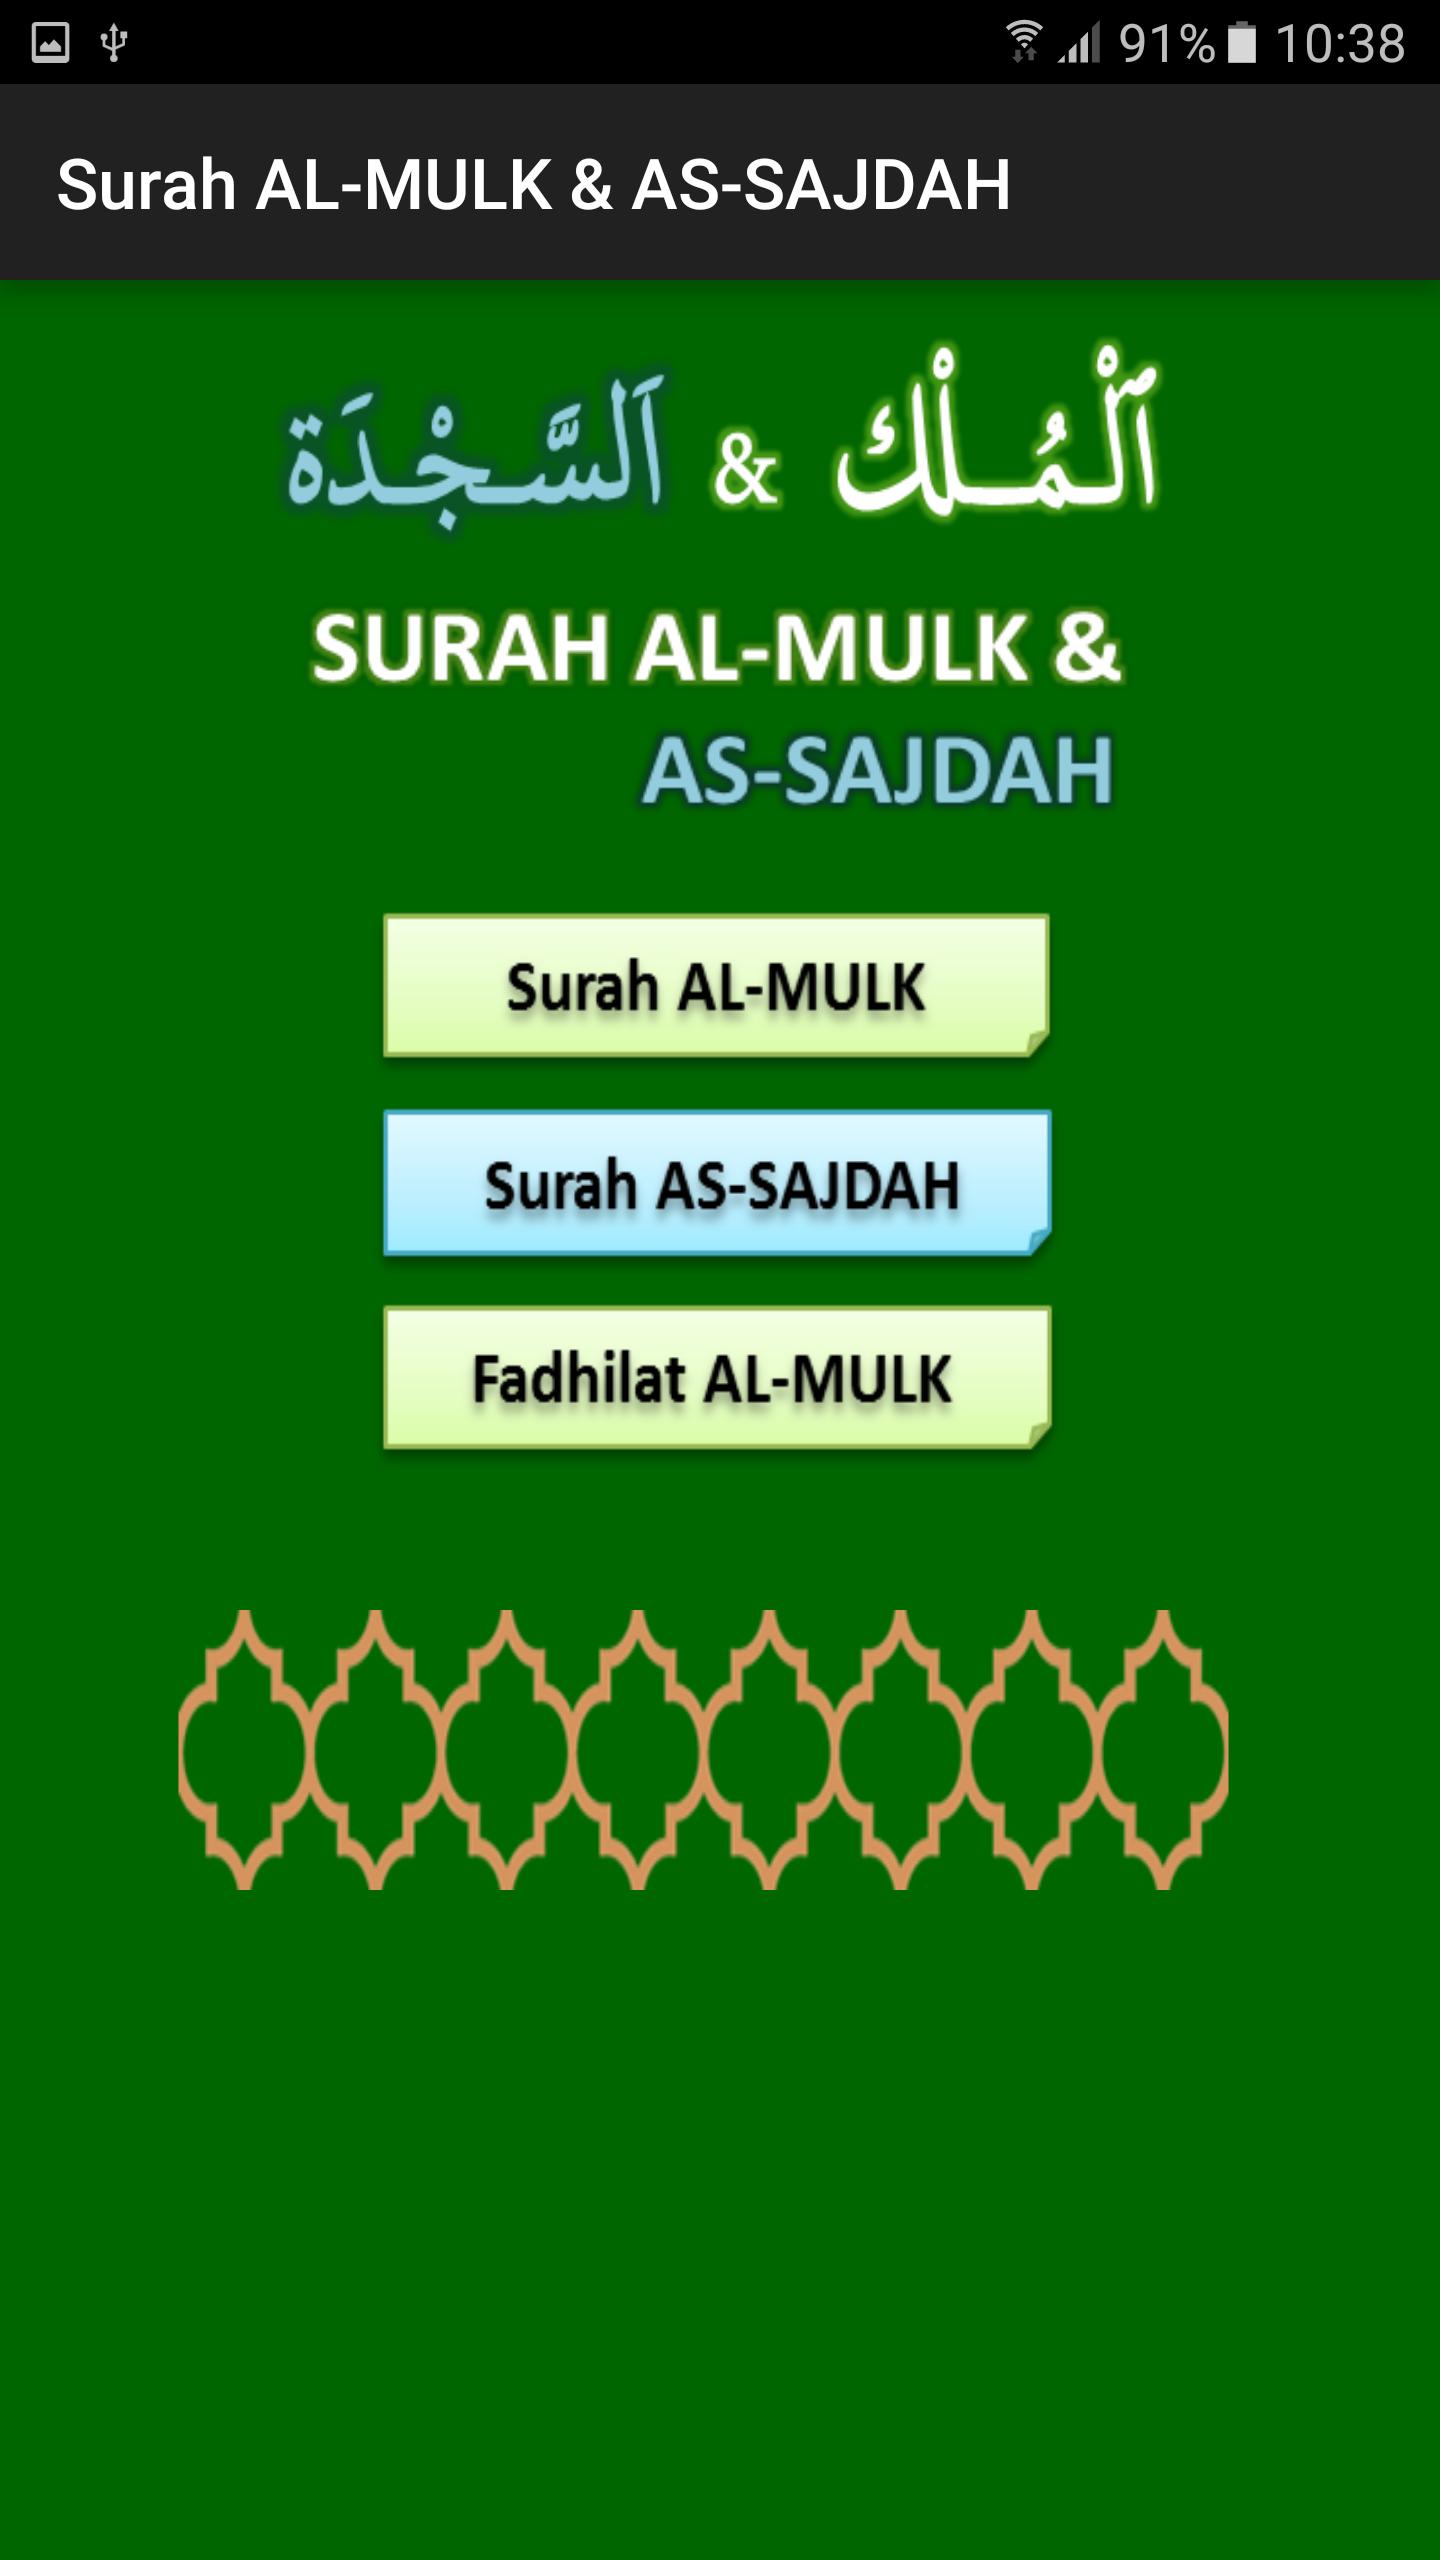 Surah AL-MULK & AS-SAJDAH for Android - APK Download